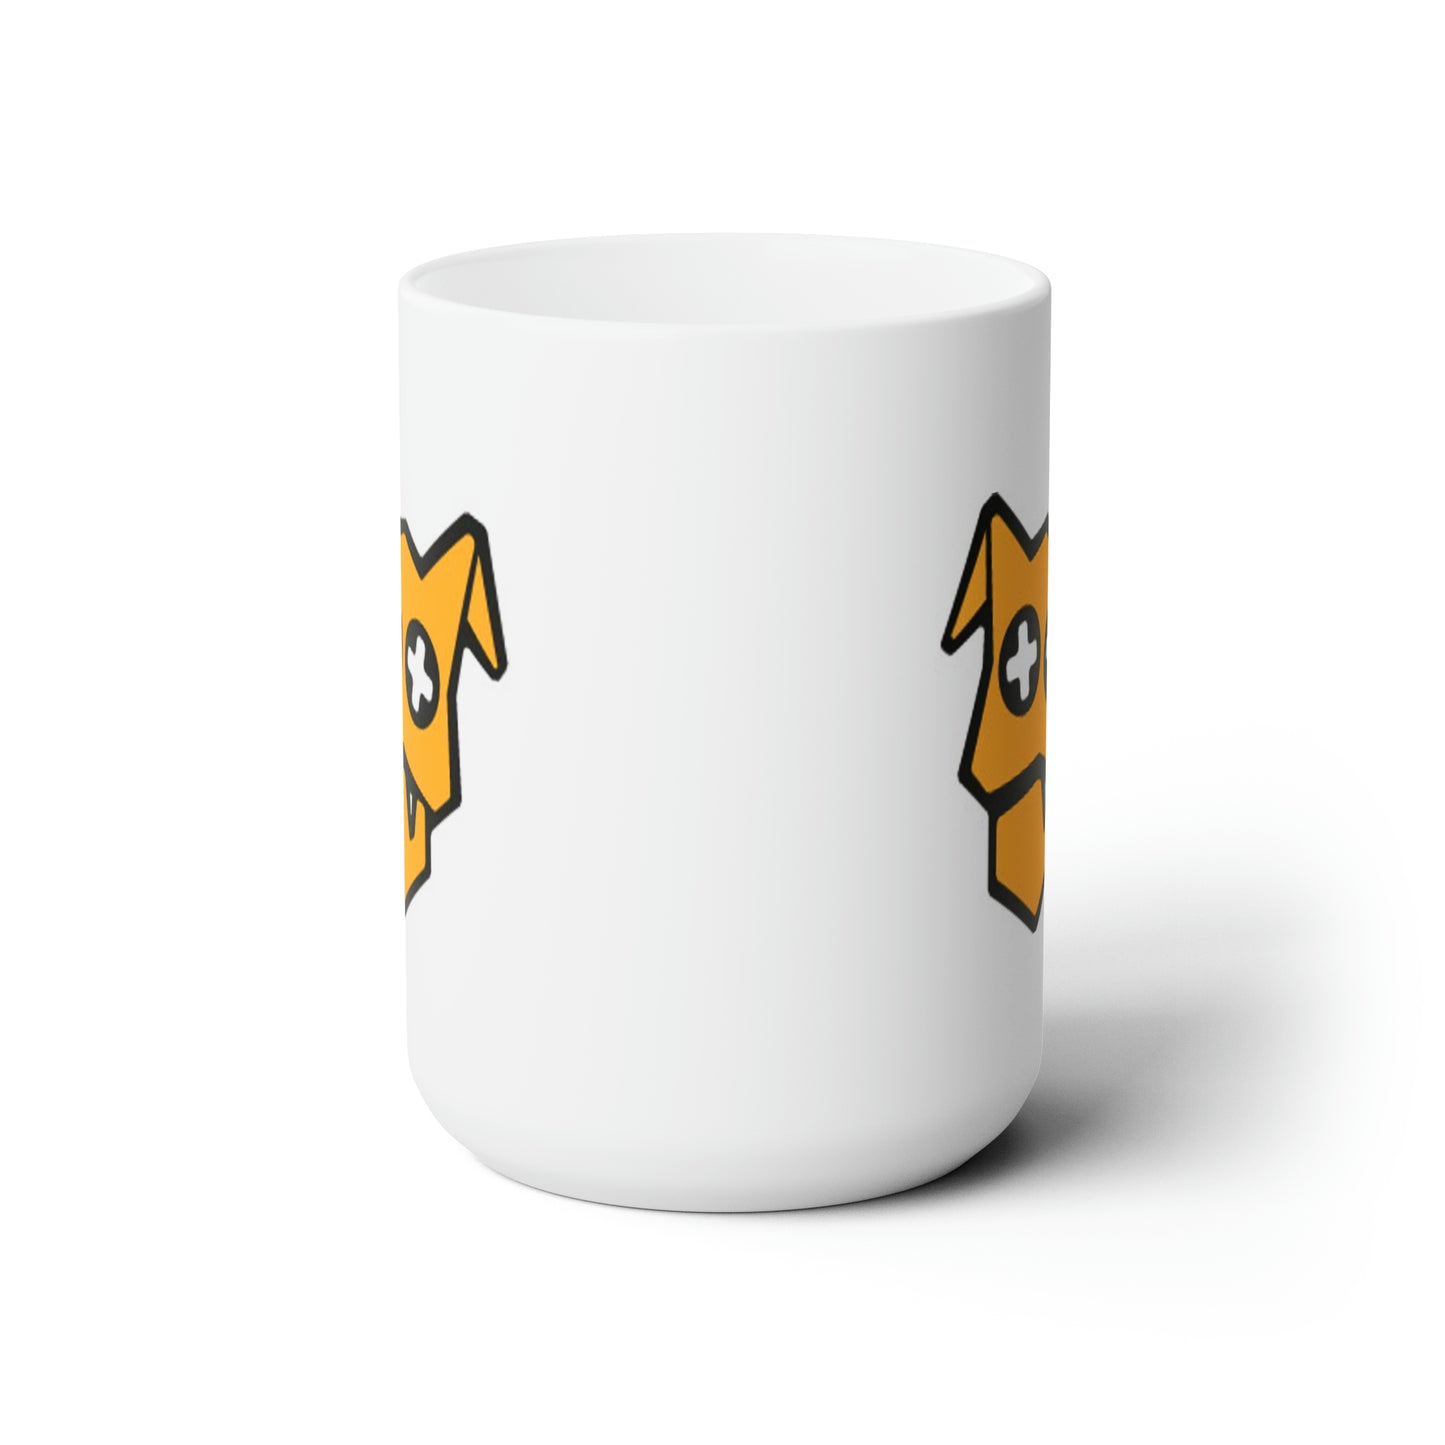 The Original - Ceramic Mug 15oz